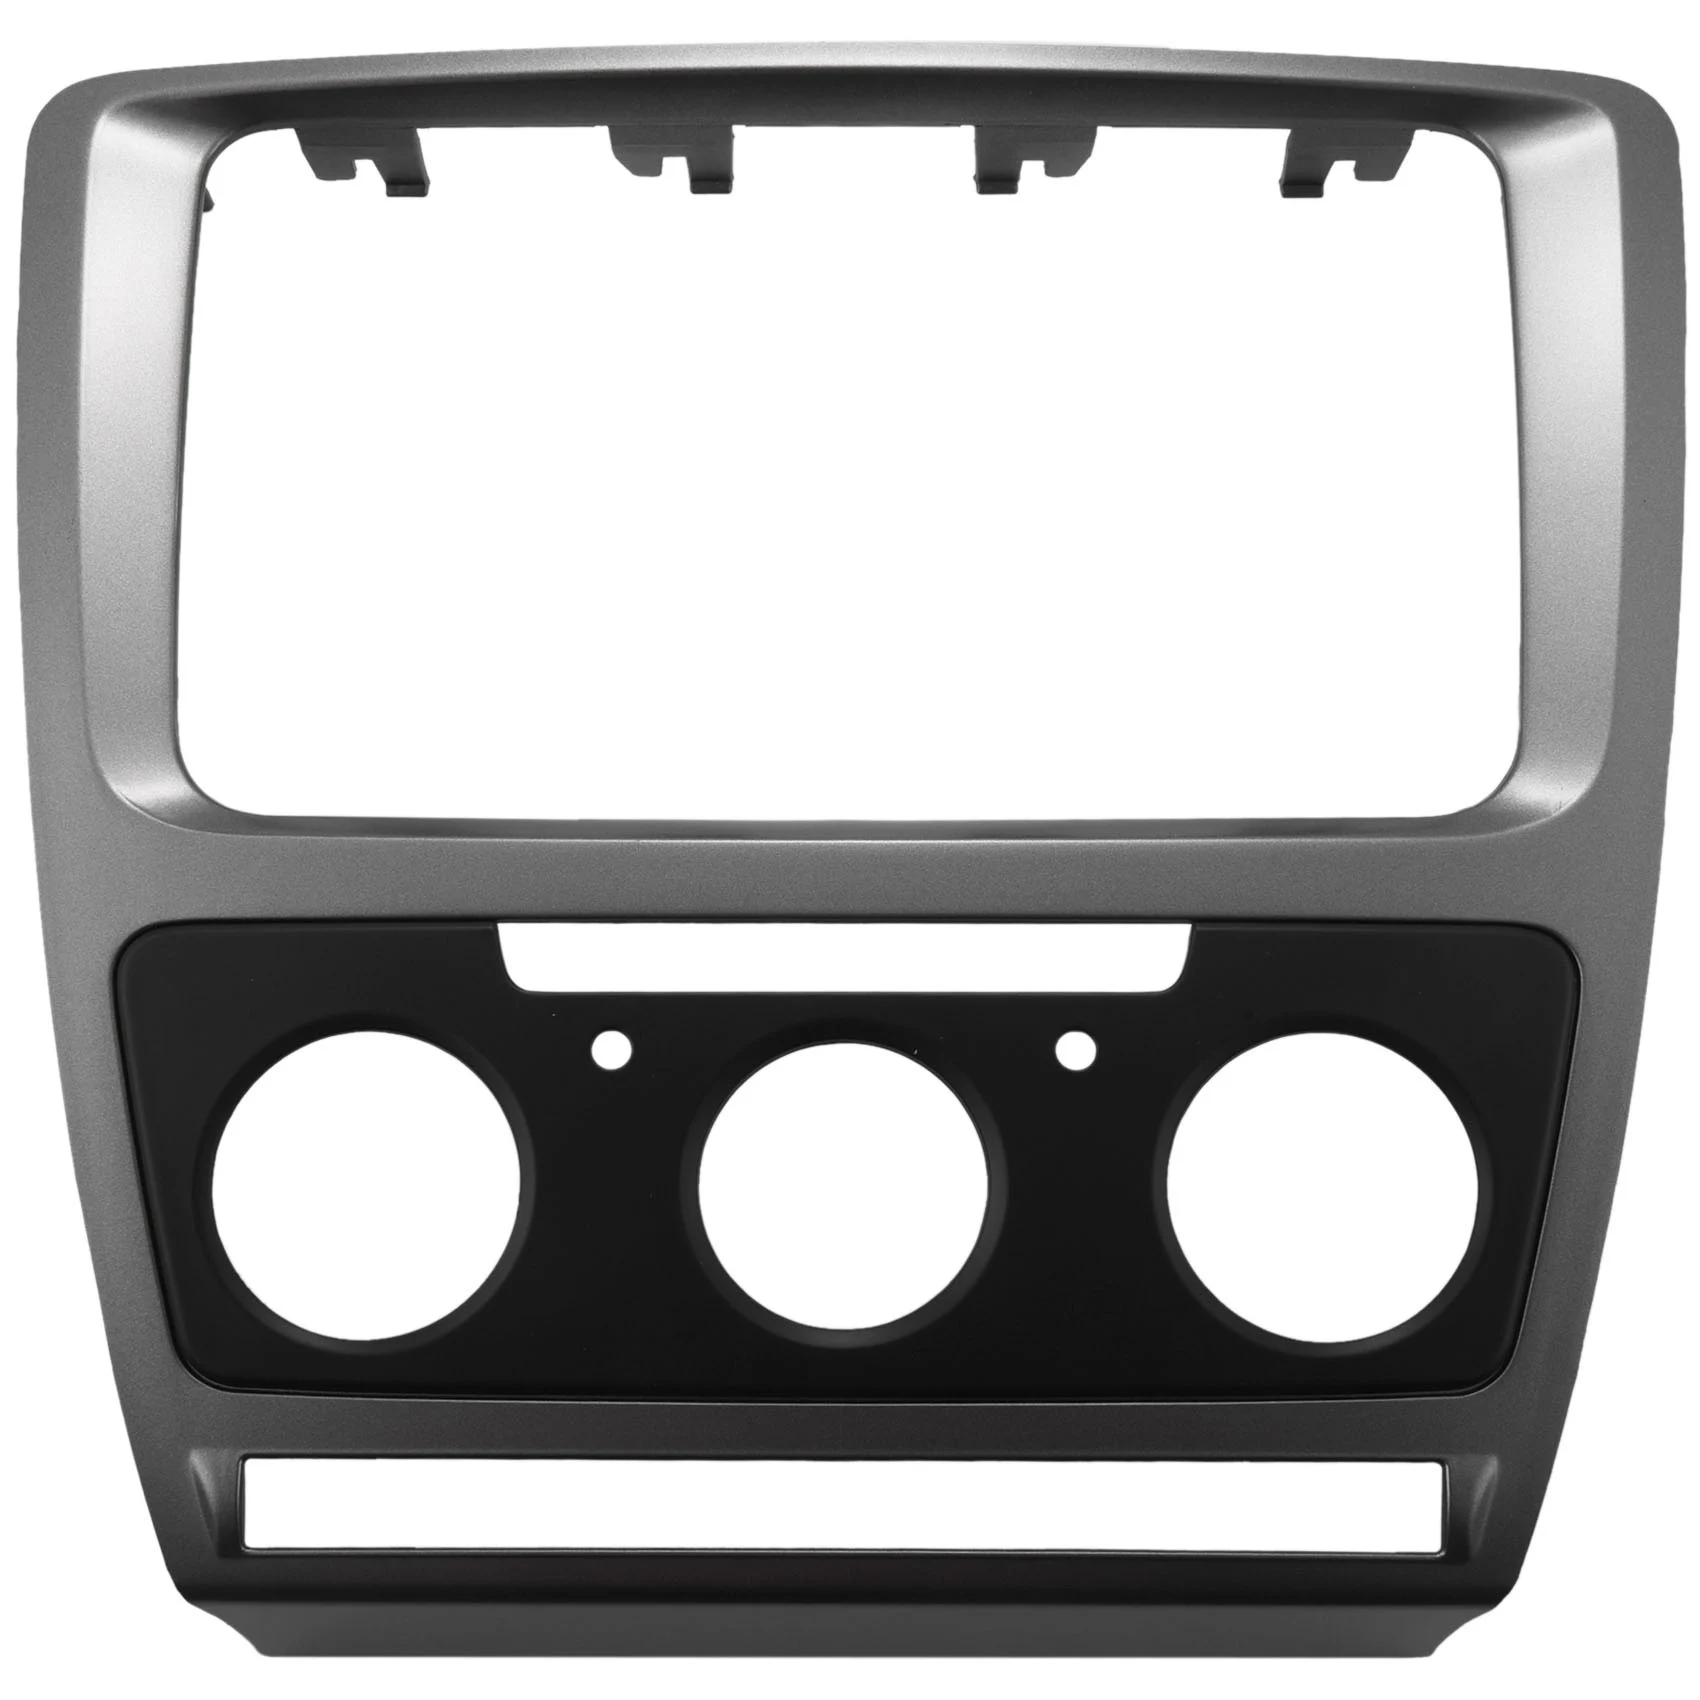 

2Din Fascia Для Skoda Octavia 2 2010-2013, монтажный комплект для монтажа звуковых стереопанелей, переходник для рамки